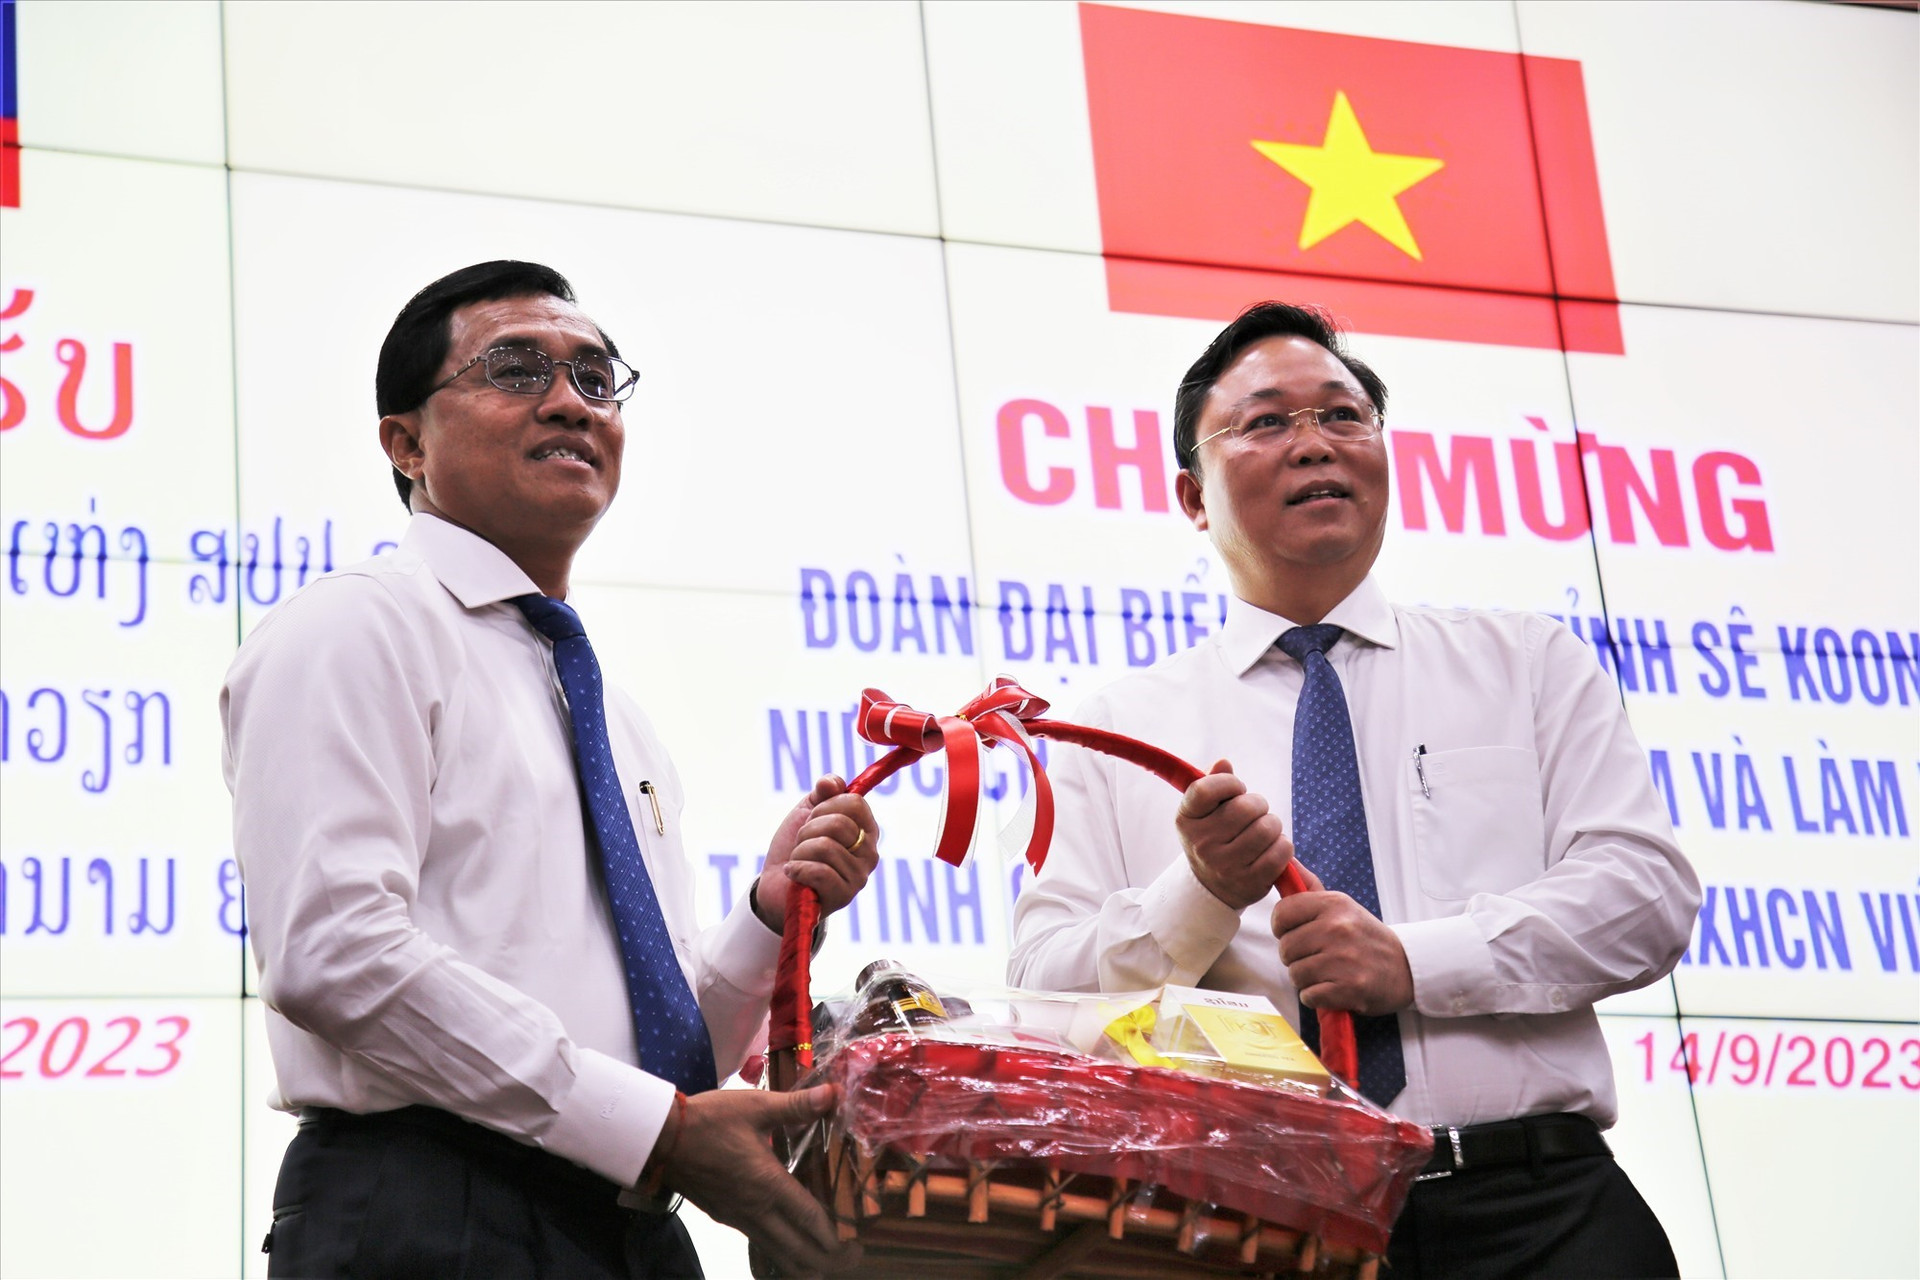 Bí thư Tỉnh ủy Sê Kông (bên trái) tặng quà lưu niệm cho Chỉ tịch UBND tỉnh Quảng Nam Lê Trí Thanh. Ảnh: A.N